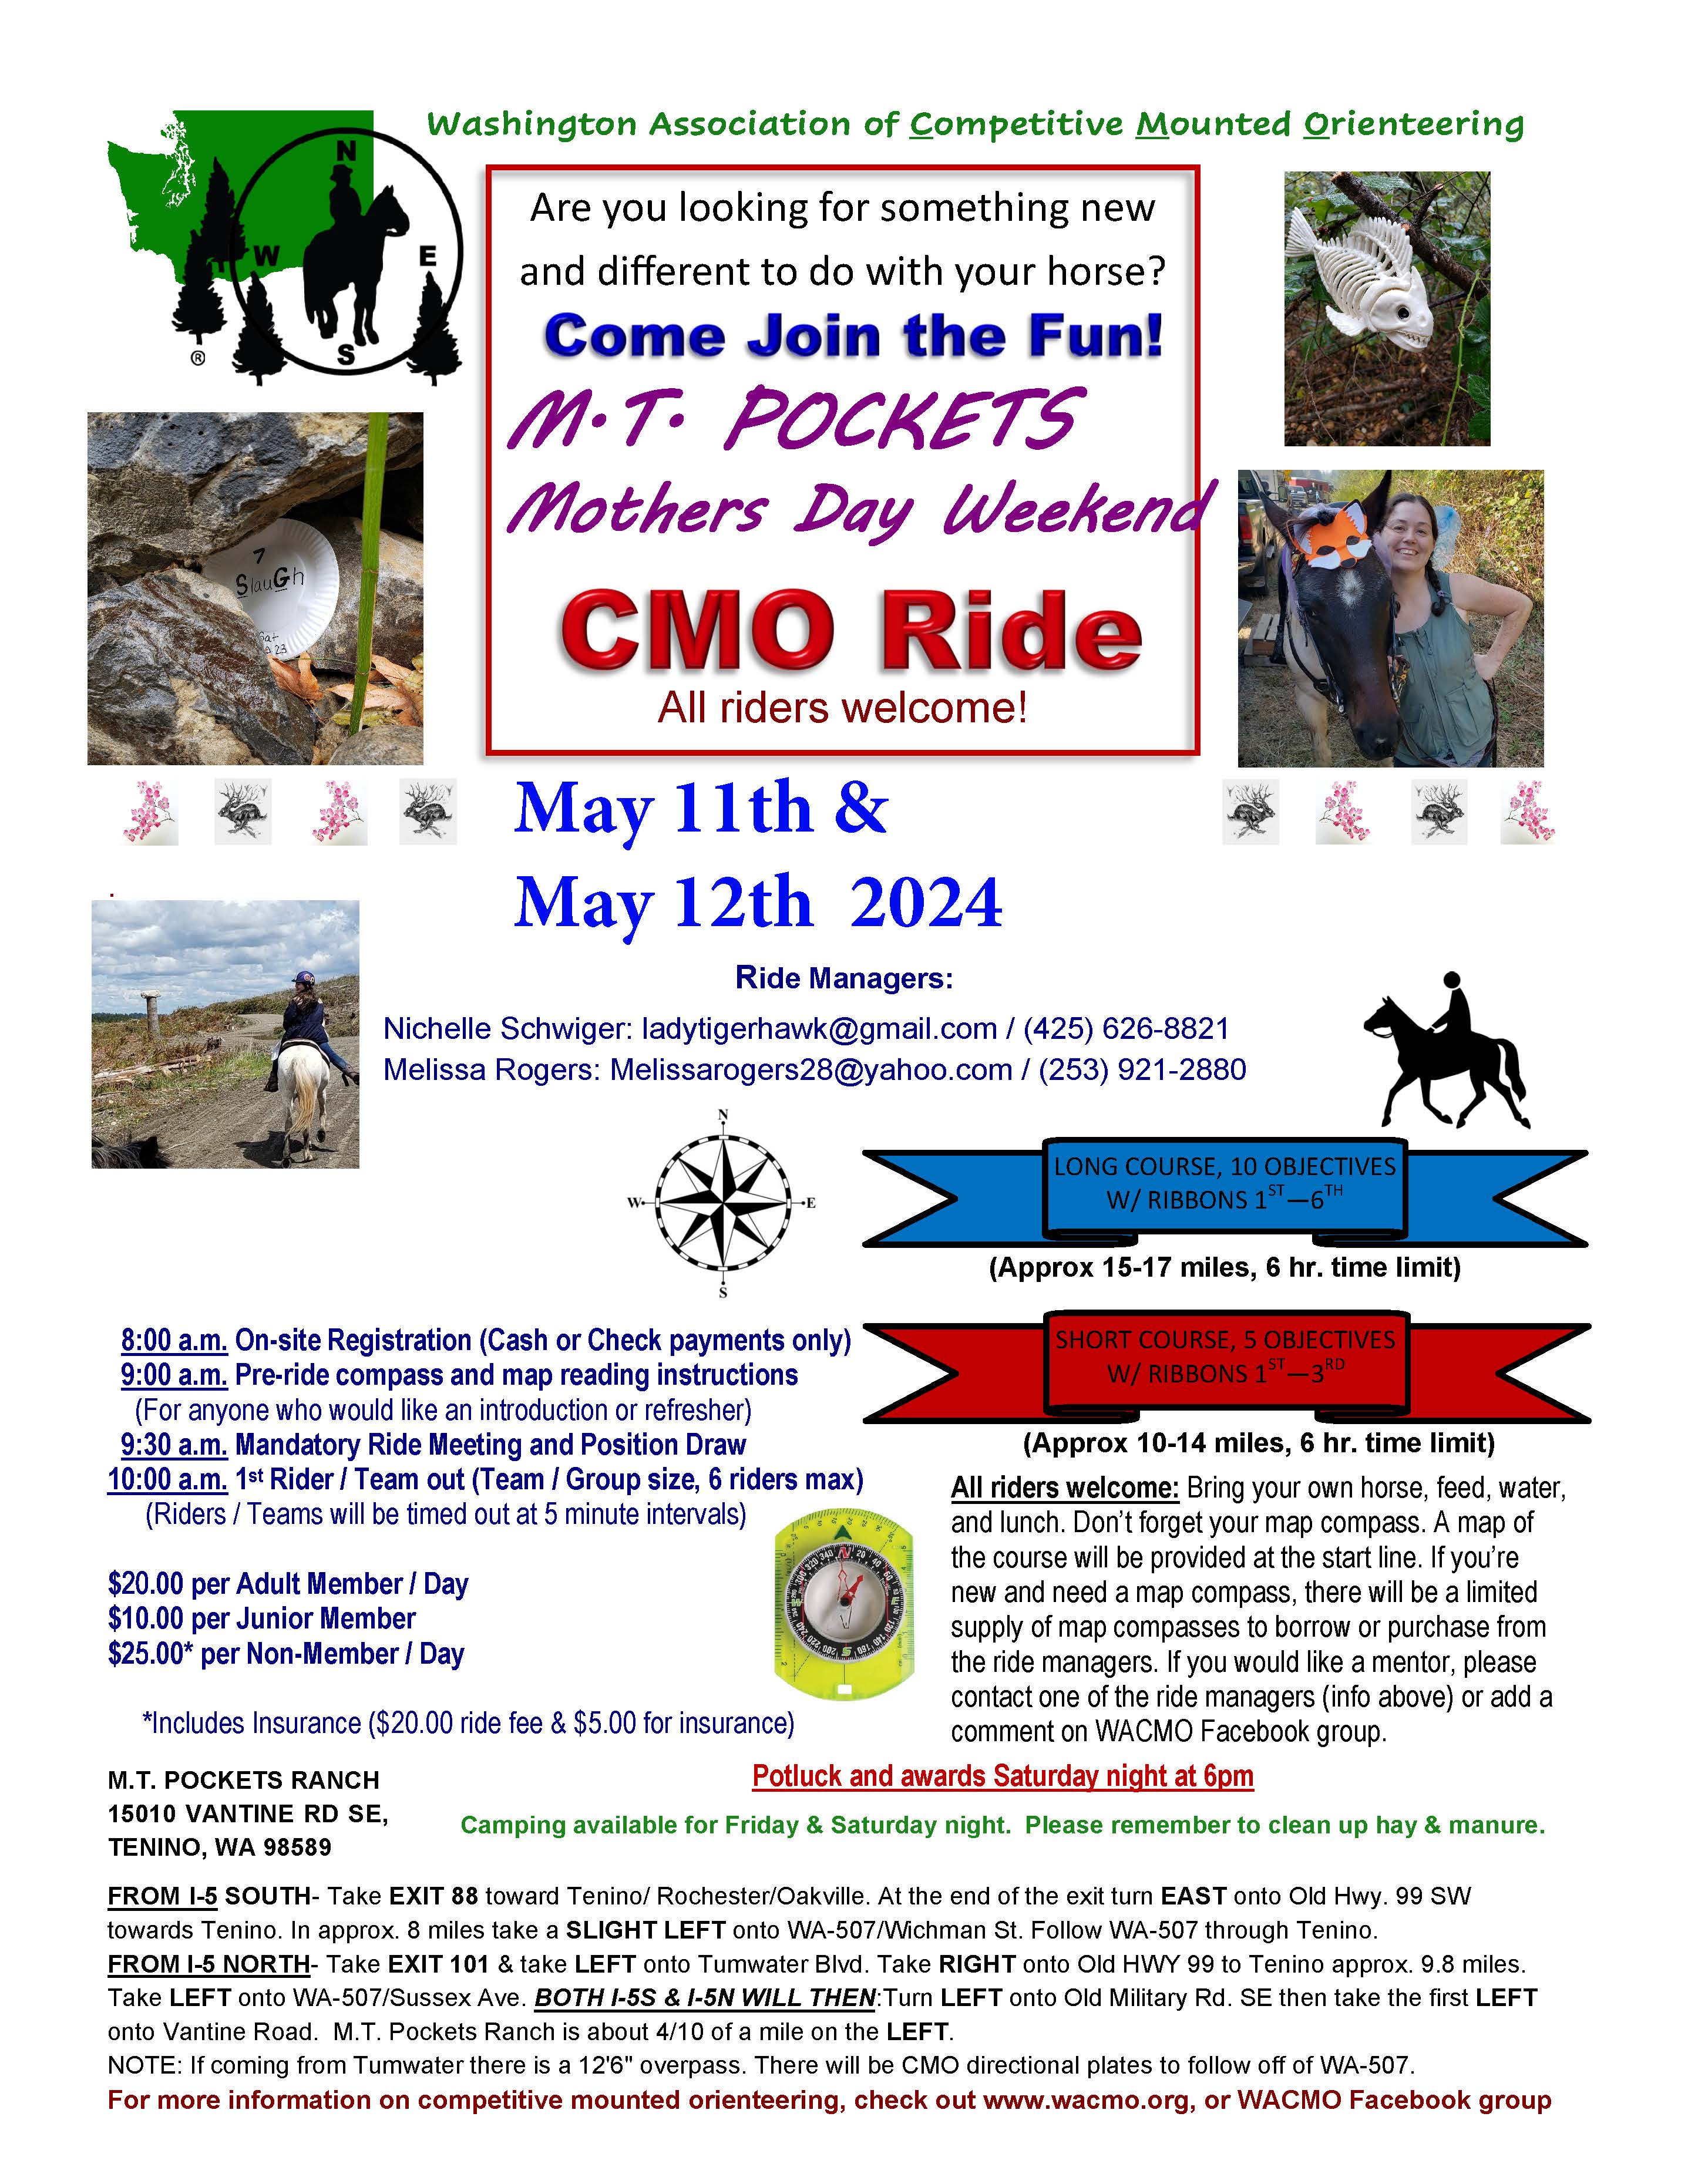 MT Pockets Spring Ride, May 11 & 12, 2024 Tenino, WA